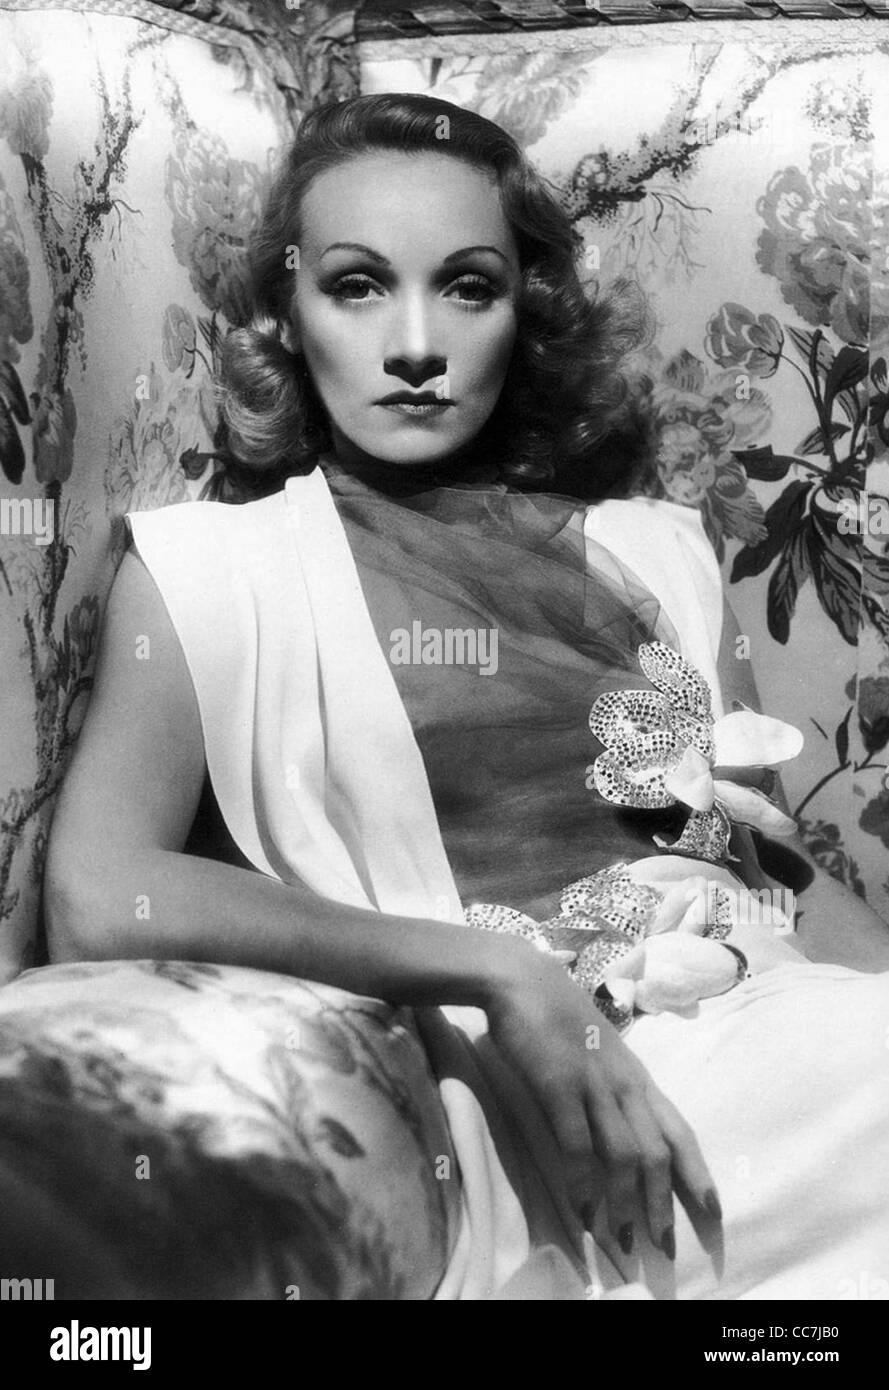 Marlene Dietrich (27 décembre 1901 - 6 mai 1992) - actrice et chanteuse germano-américain. Banque D'Images